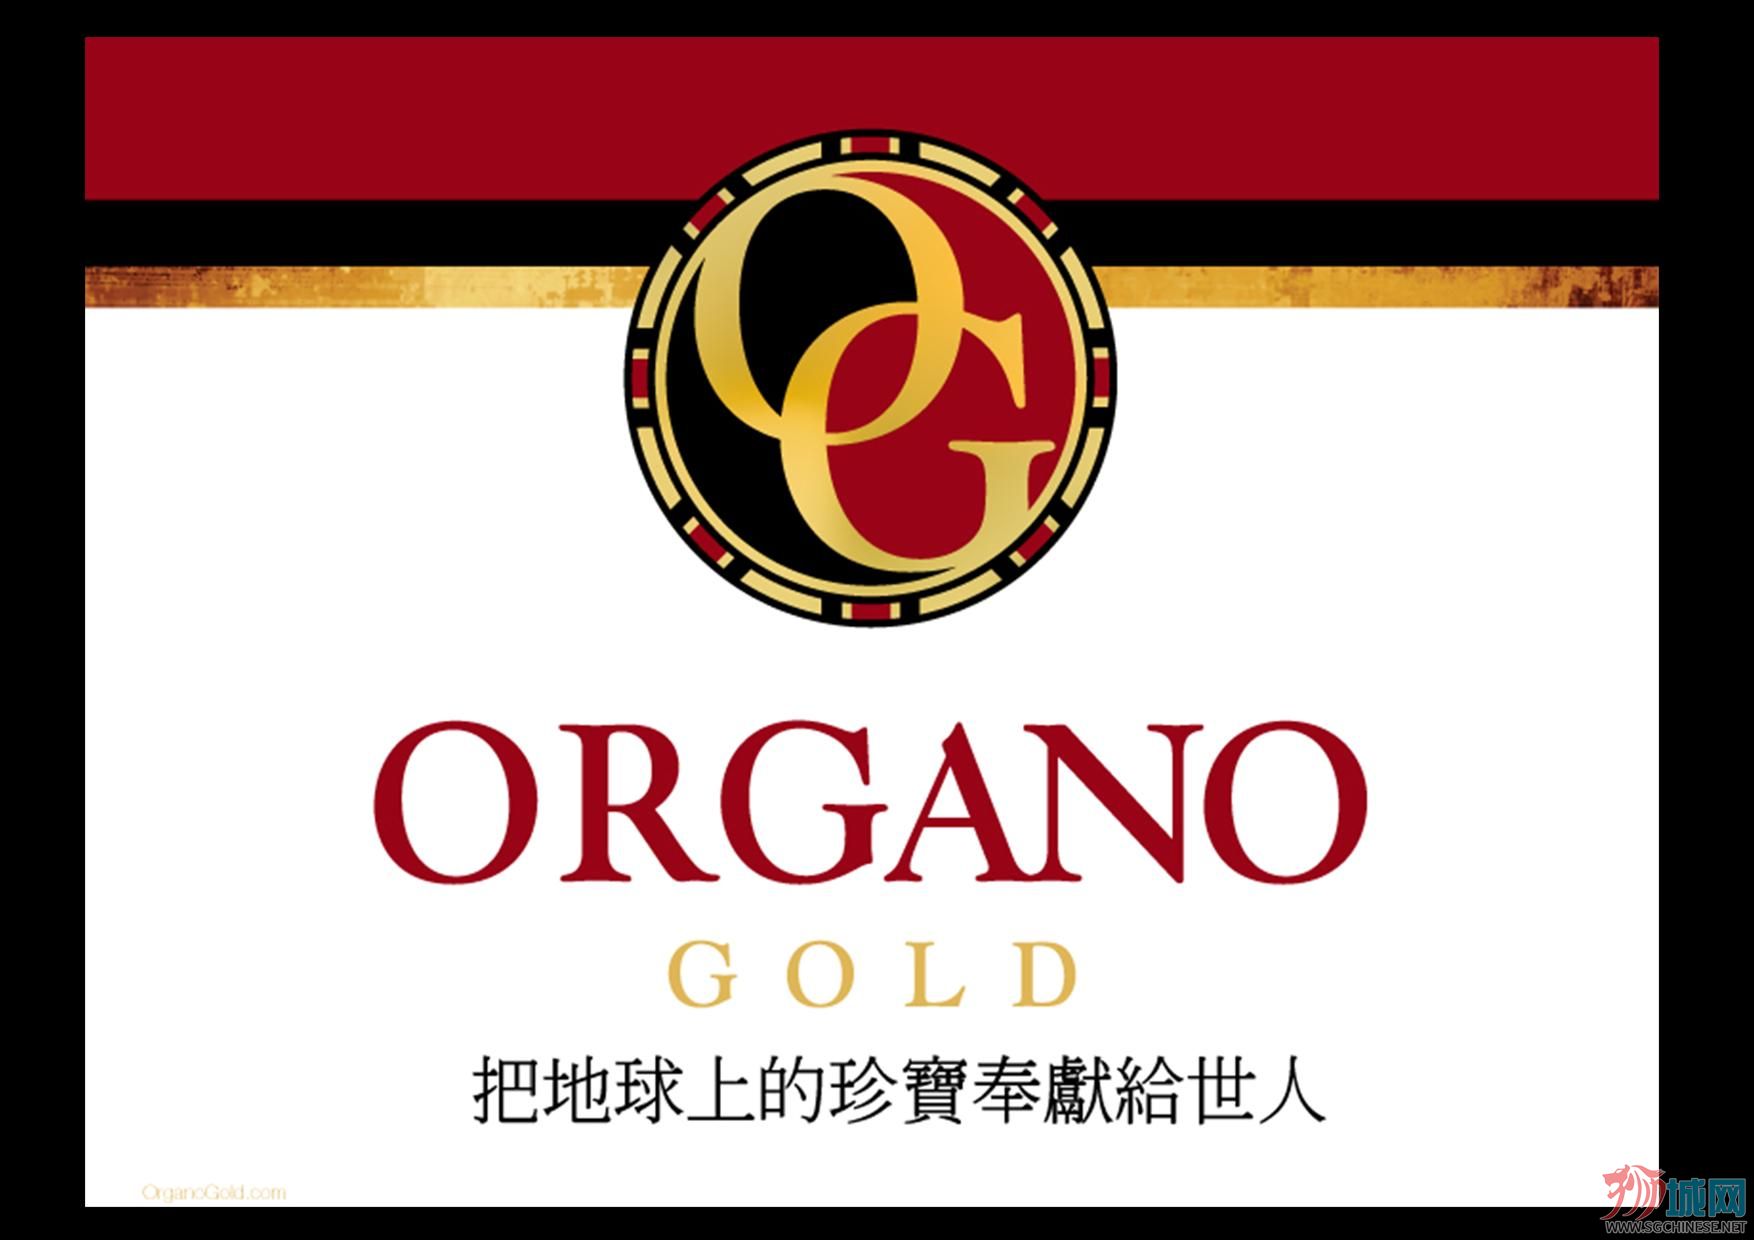 Organo Gold Chinese.jpg